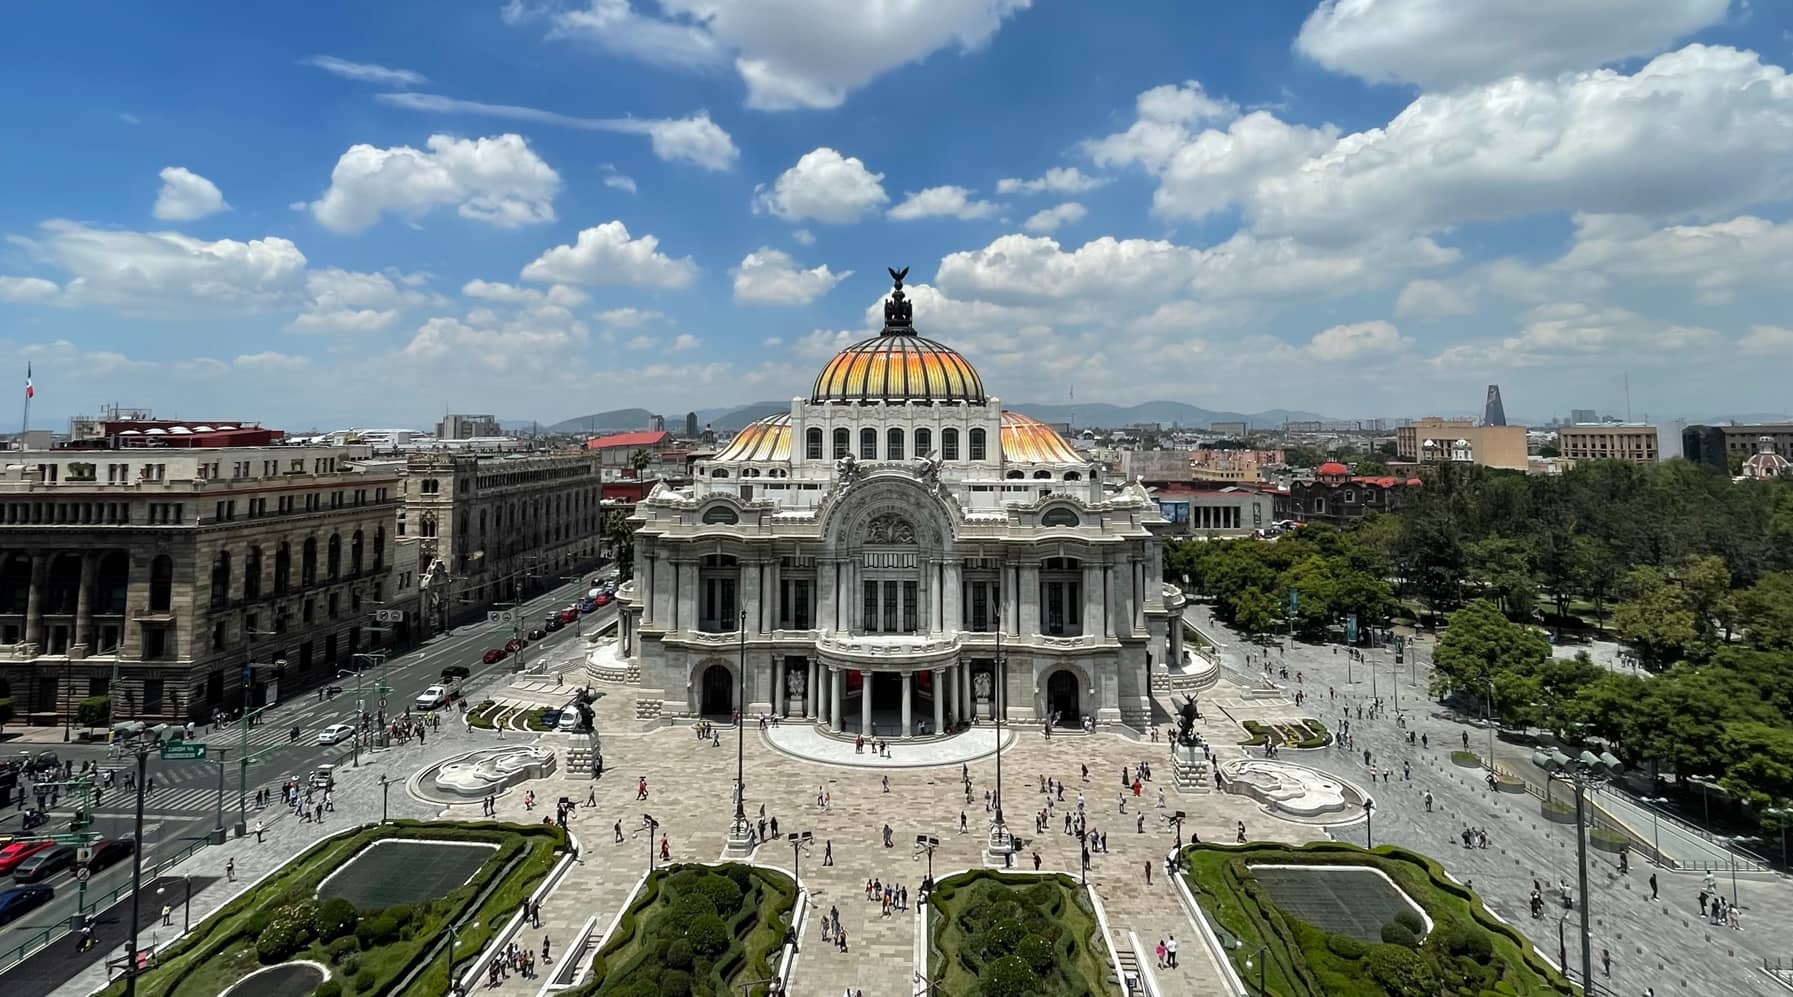 Mexico City meilleure ville Amerique pour expatrier (1)